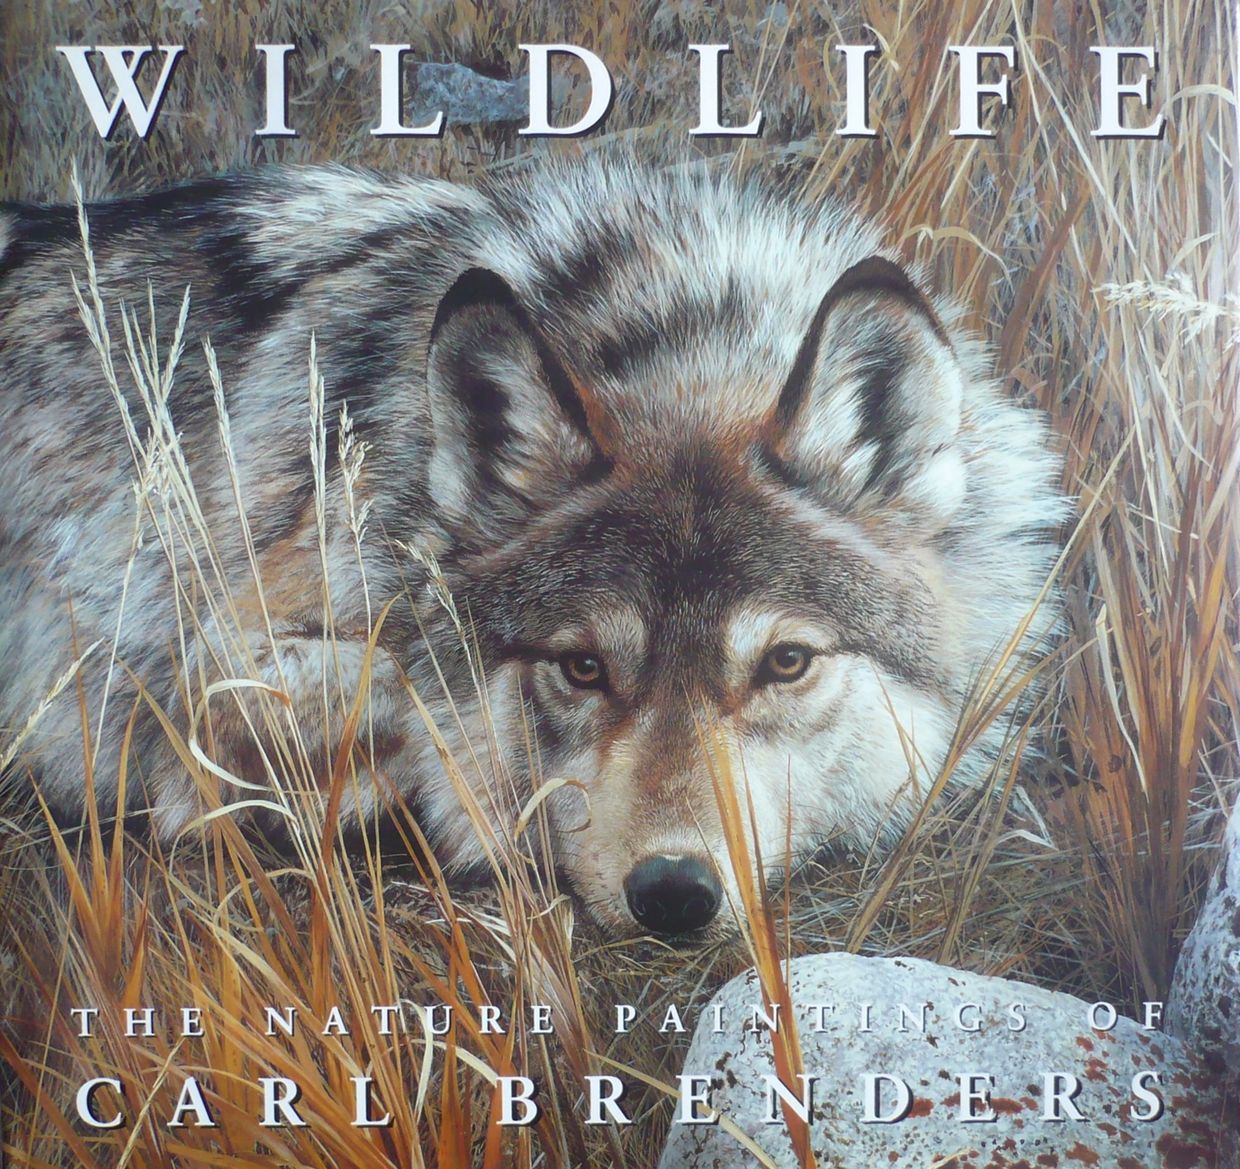 WILDLIFE: THE NATURE PAINTINGS OF CARL BRENDERS